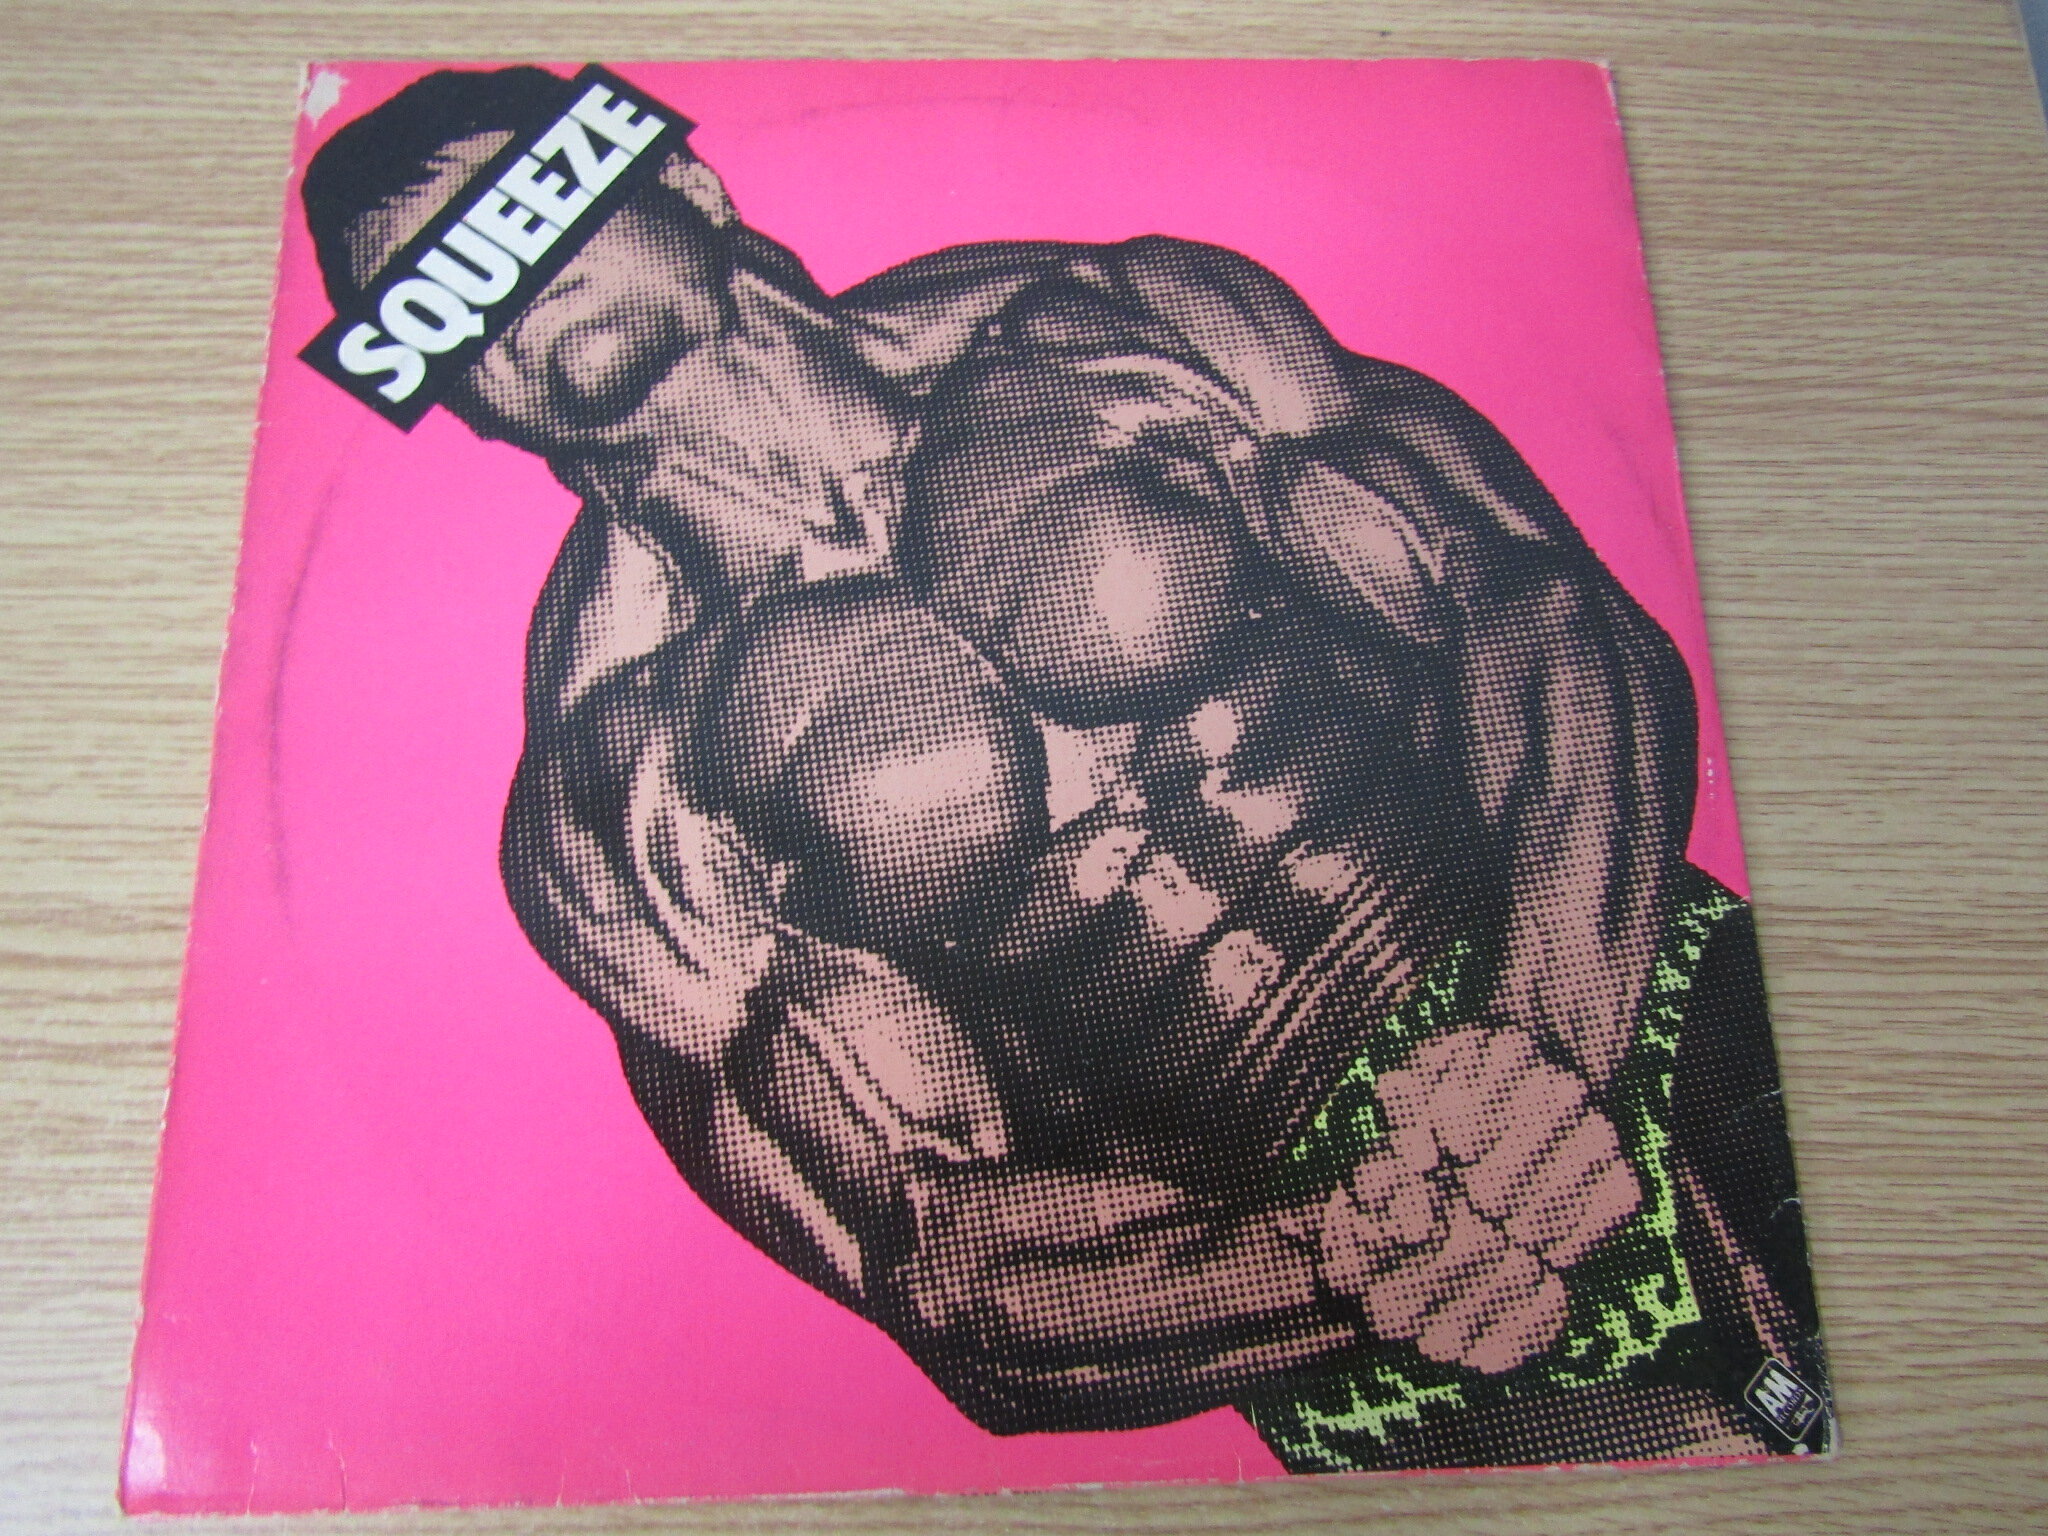 Squeeze 同名專輯 12寸黑膠LP